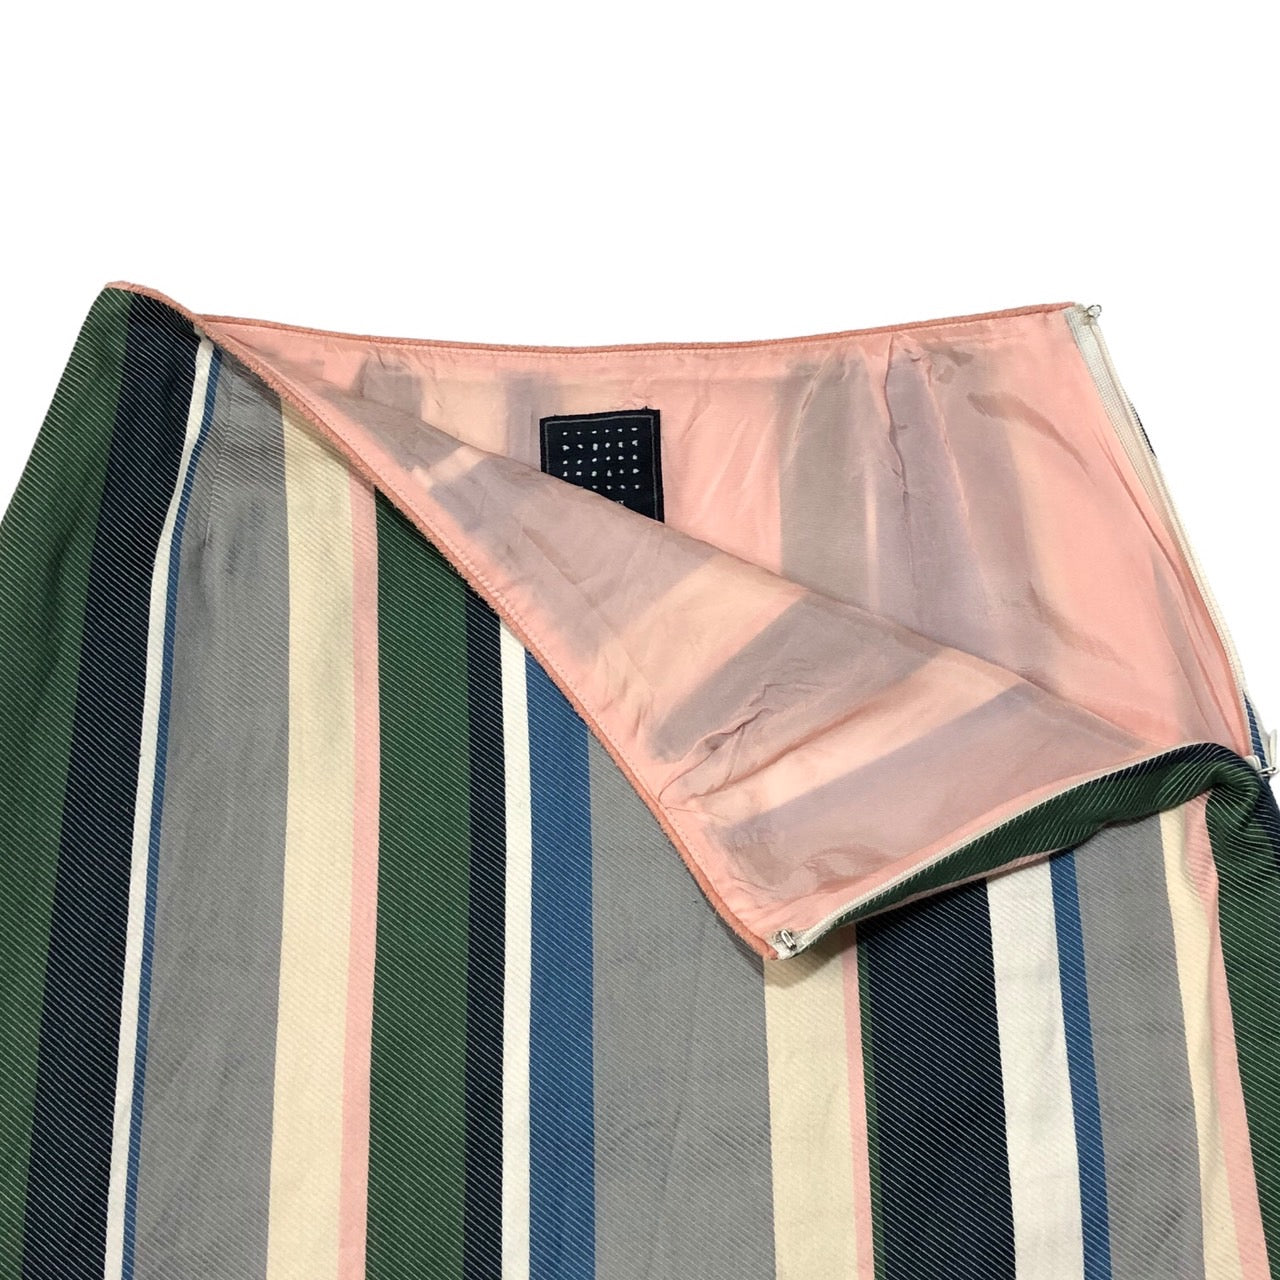 mina perhonen(ミナペルホネン) multi striped skirt マルチストライプ スカート hs5145 SIZE FREE マルチカラー